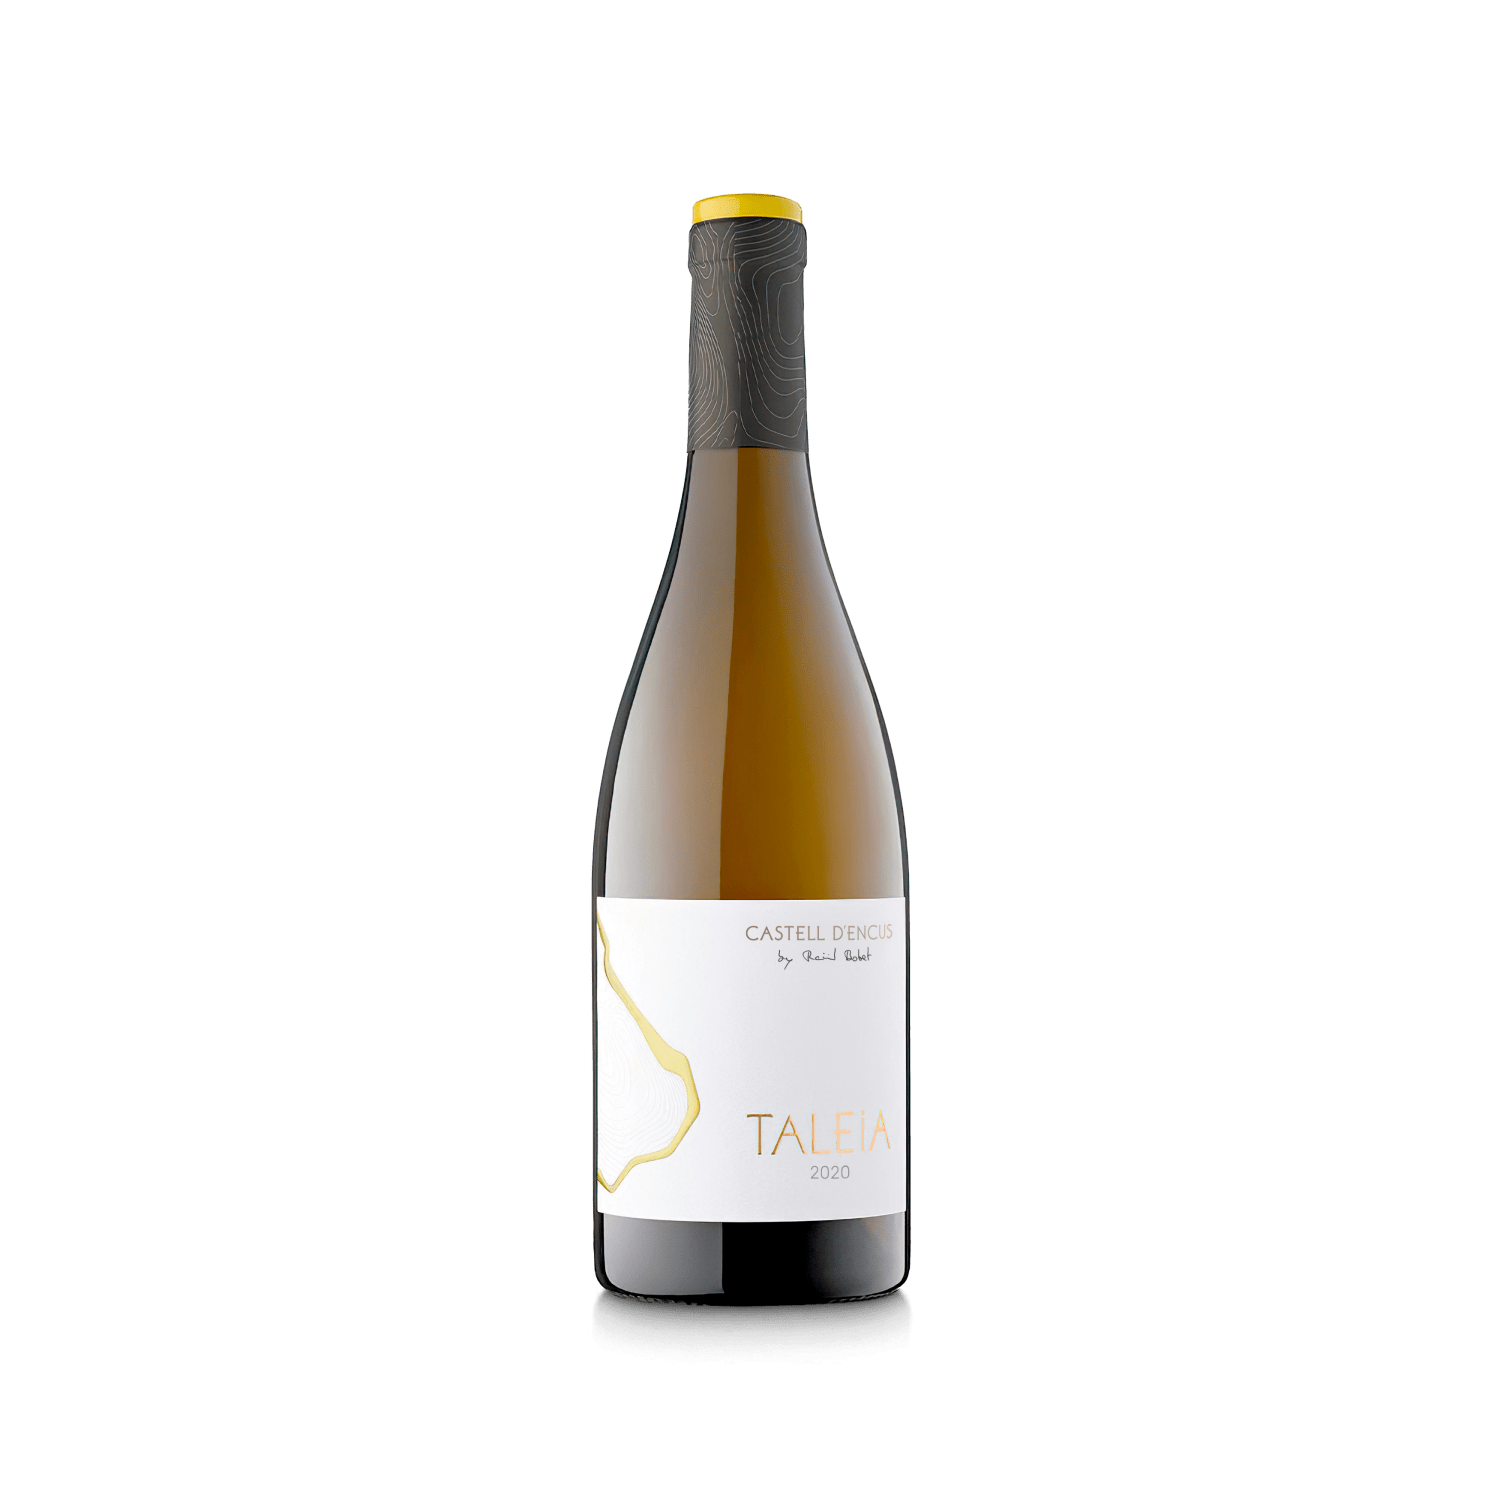 Botella de estudio del vino TALEIA cosecha 2020